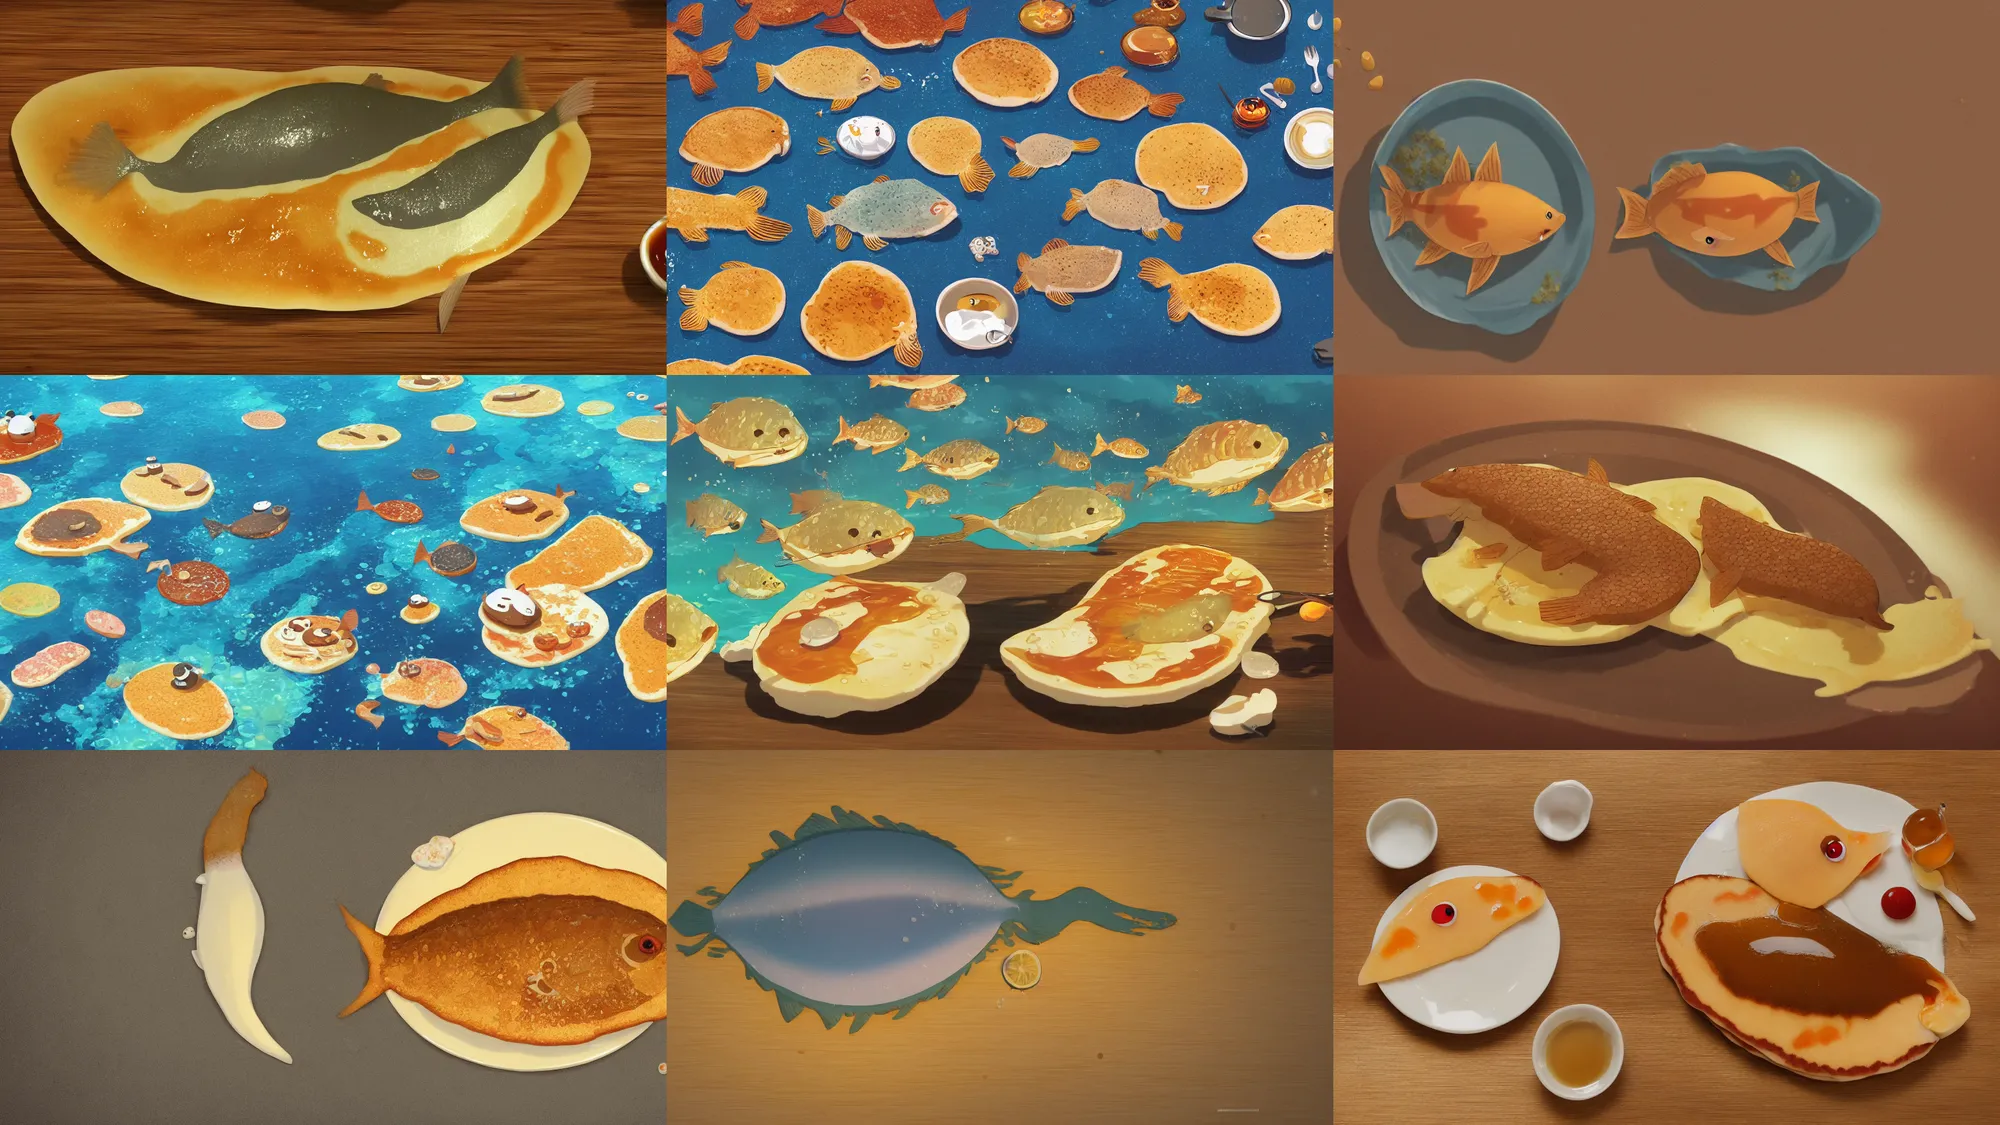 Prompt: happy flat pancake fish swimming in syrup, cute, 4 k, fish made of pancake, fantasy food world, living food adorable pancake, brown atmospheric lighting, by makoto shinkai, studio ghibli, chris moore